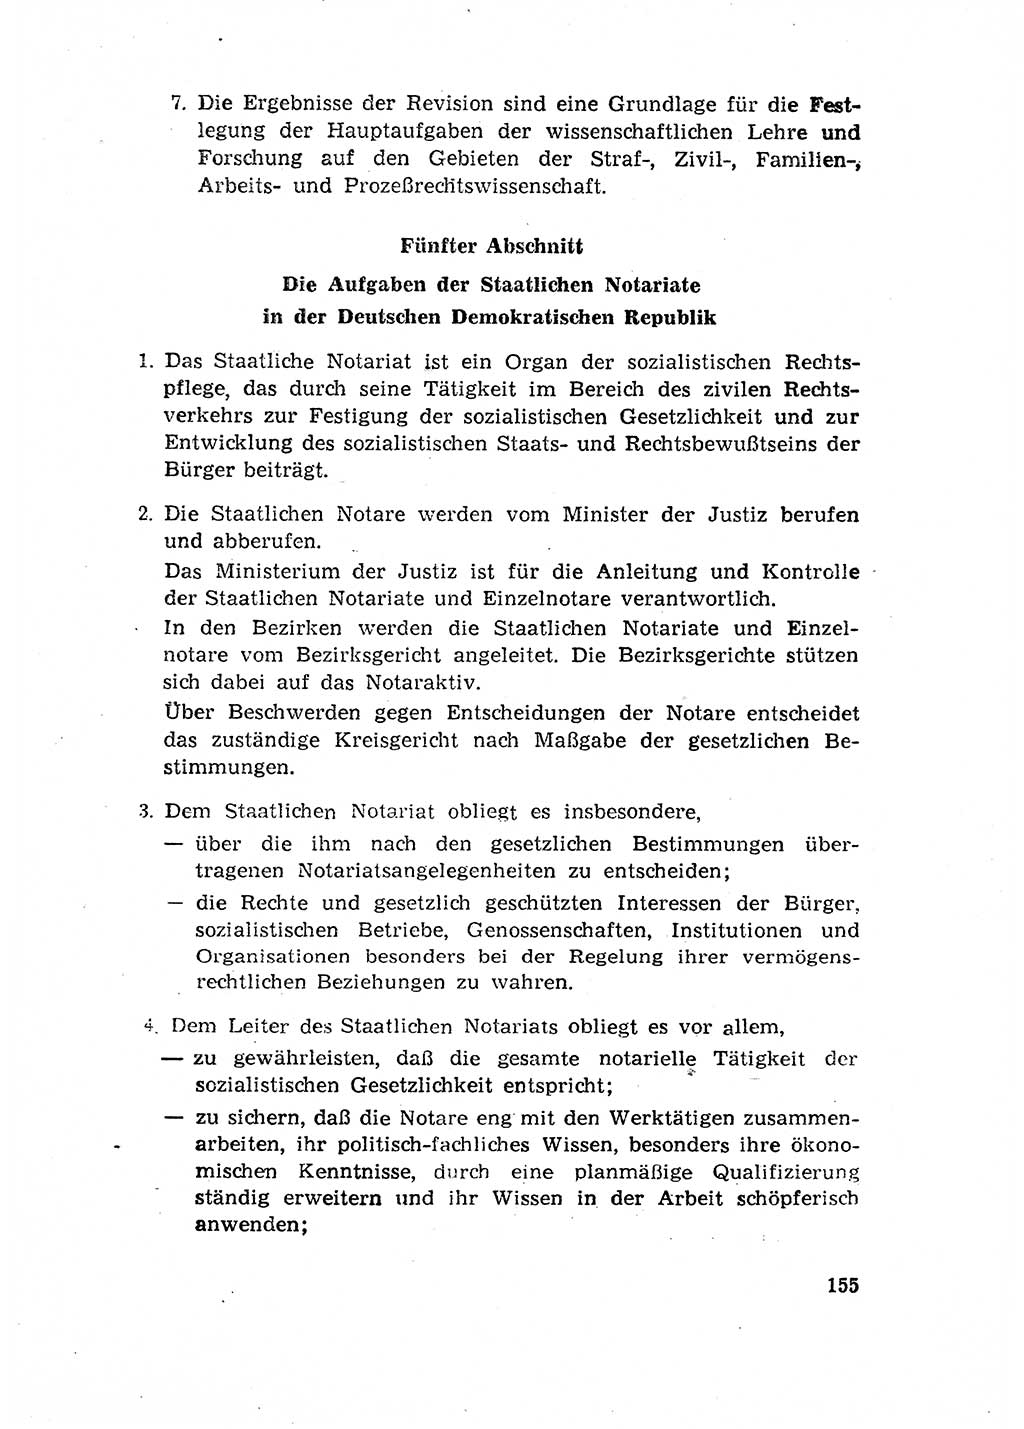 Rechtspflegeerlaß [Deutsche Demokratische Republik (DDR)] 1963, Seite 155 (R.-Pfl.-Erl. DDR 1963, S. 155)